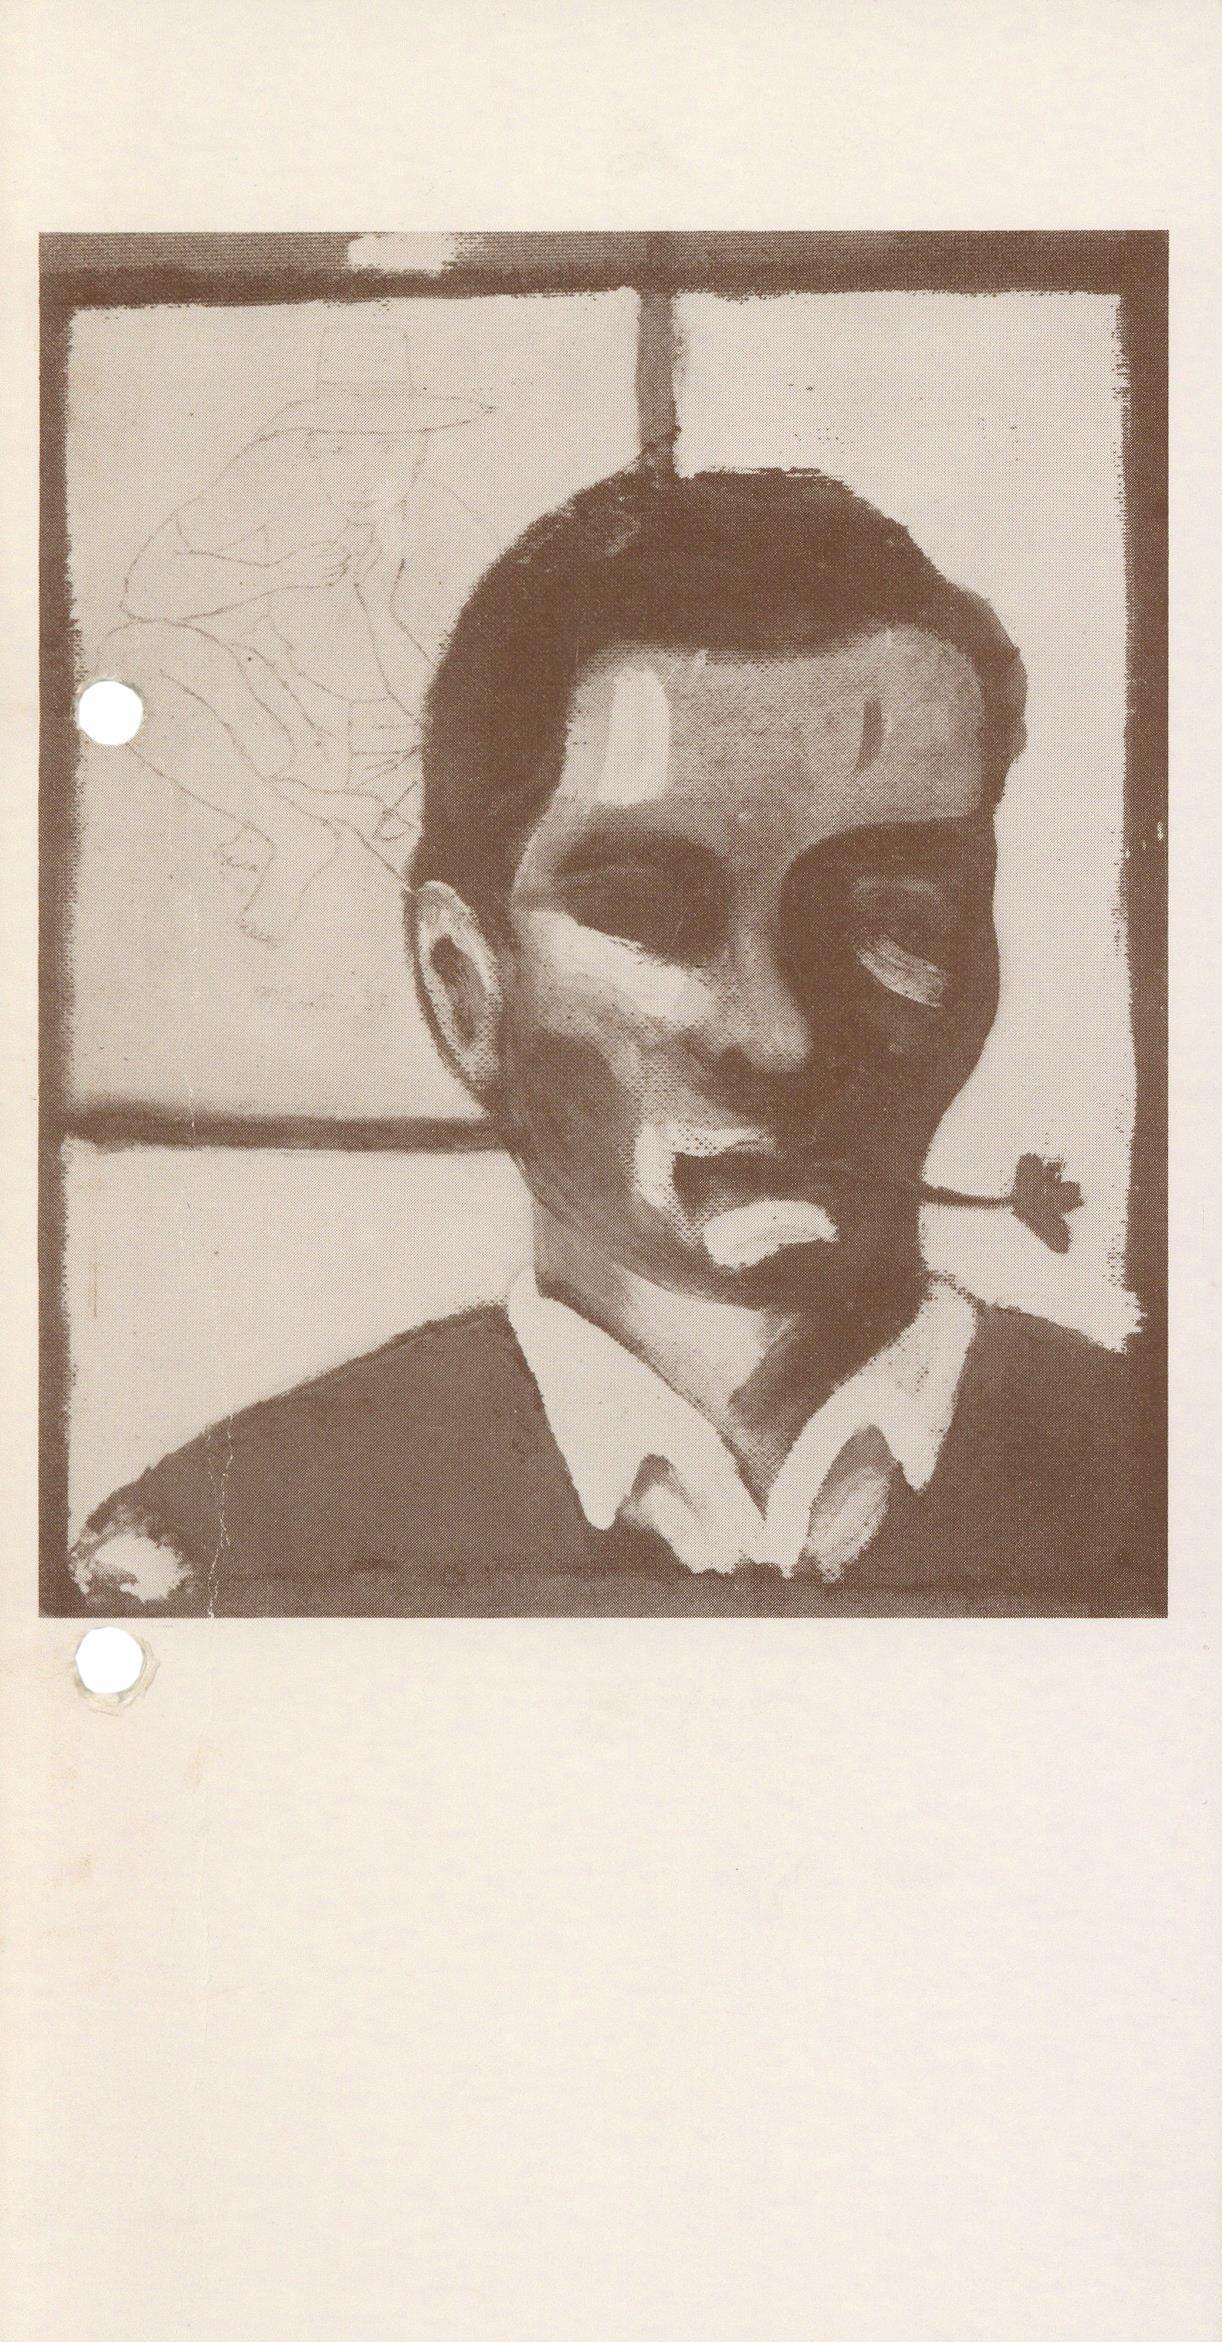 Pinturas e Desenhos de Pasolini / A Obra Plástica de Pasolini [exposição e conferência]